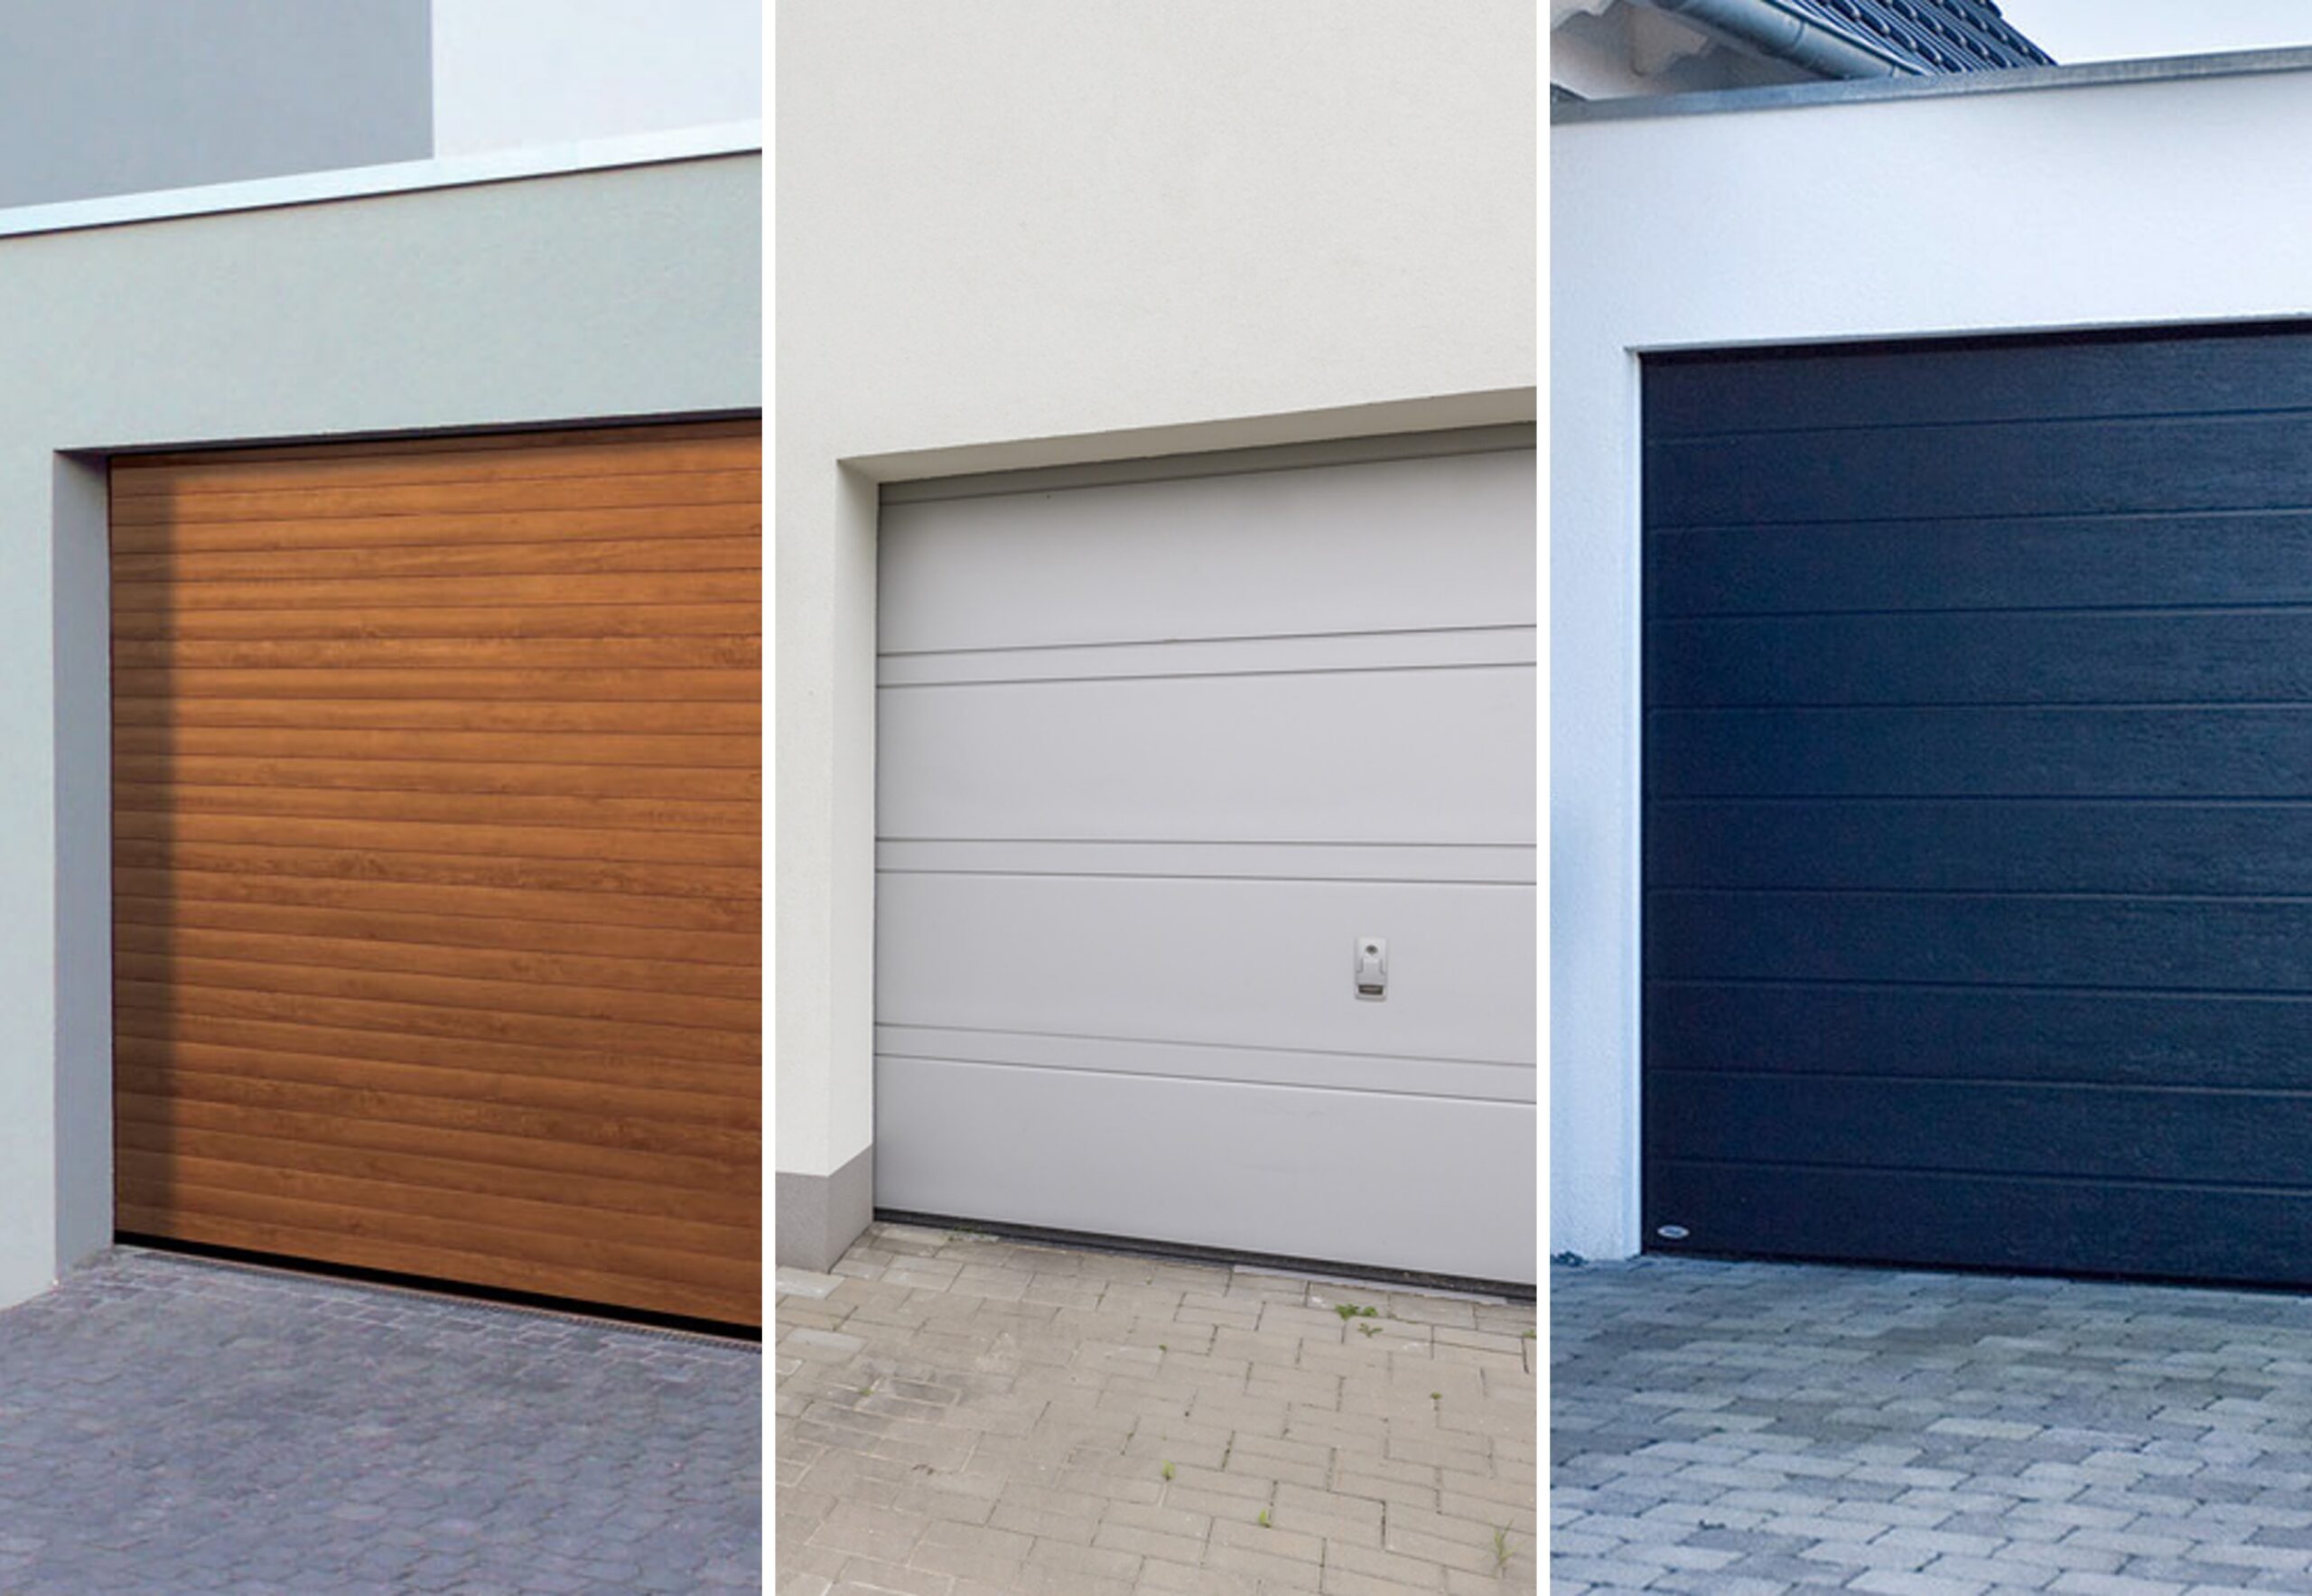 Imagen con tres tipos de puertas de garaje según el material. De izquierda a derecha, una puerta de garaje de madera, una puerta de garaje metálica y una puerta de garaje de acero